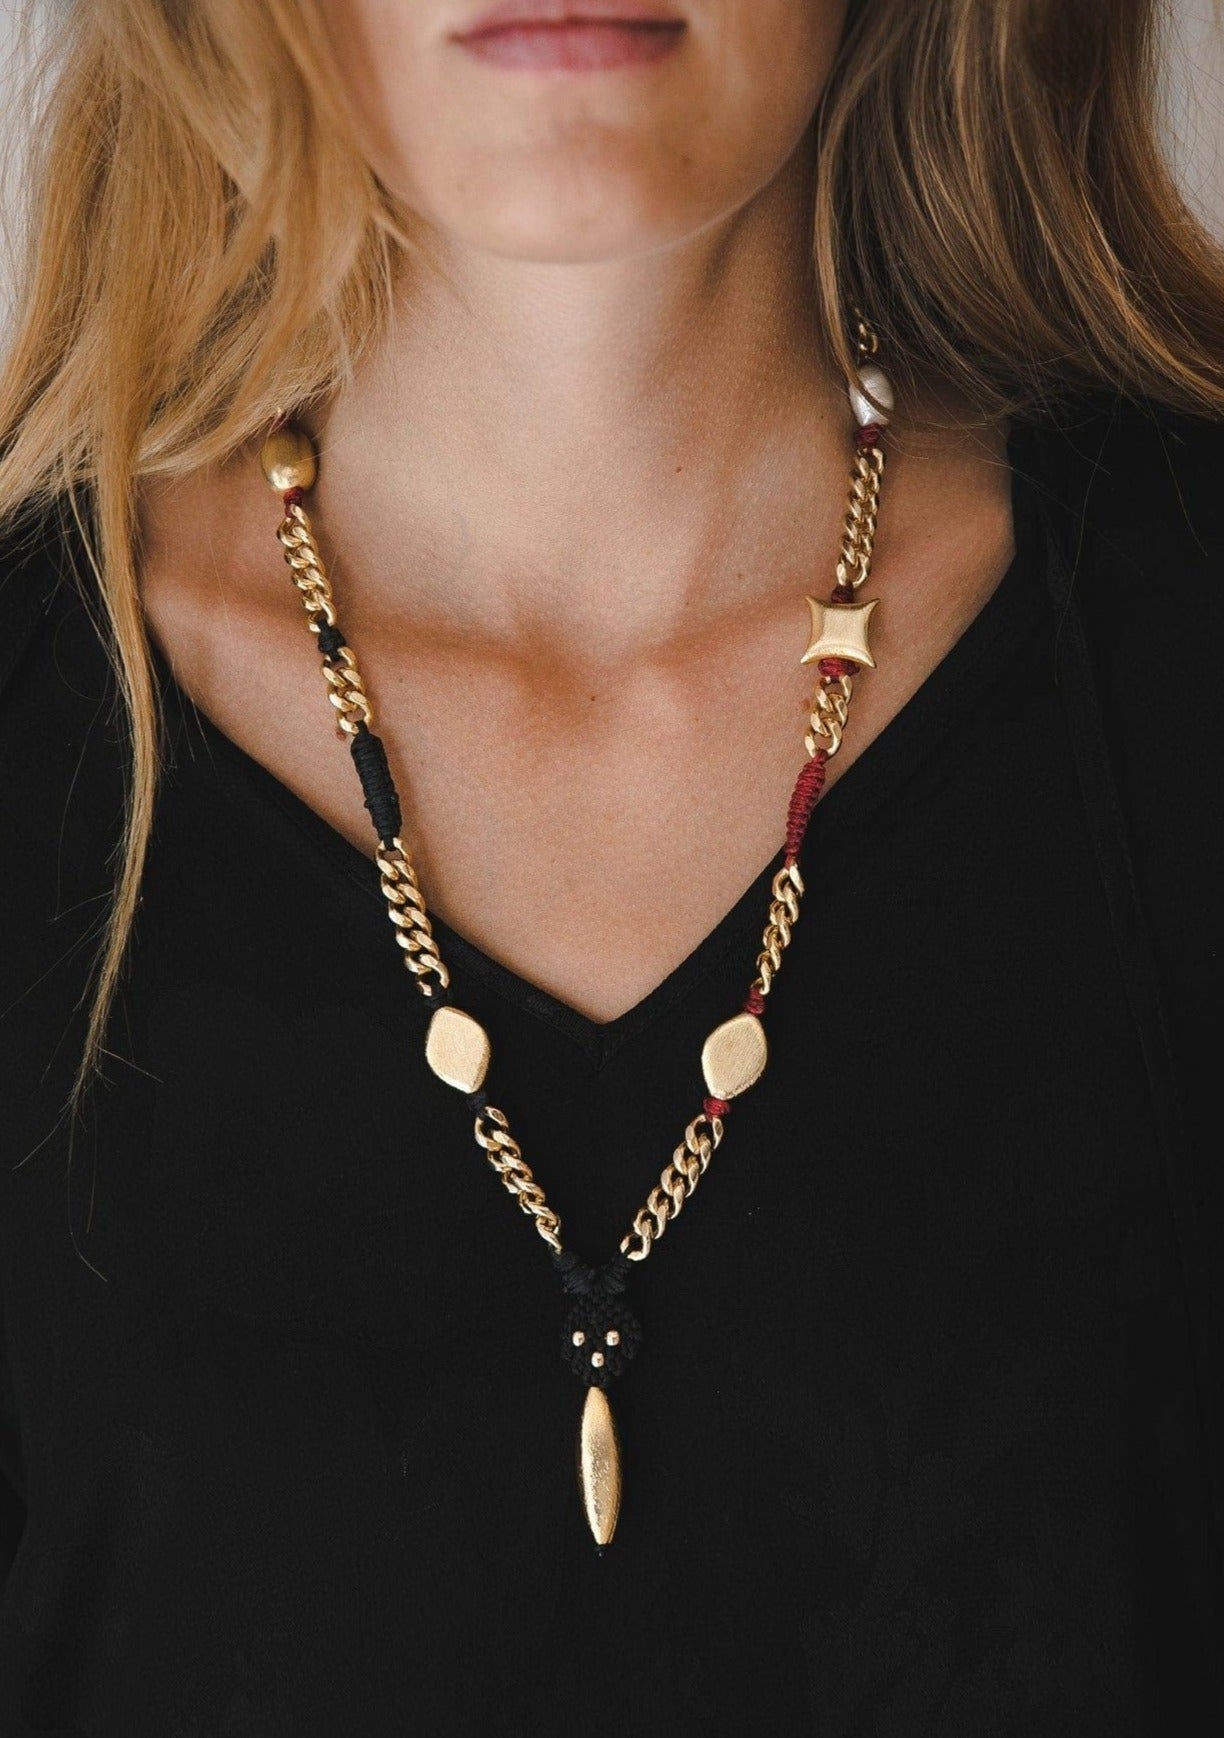 Nice Necklace - Lara Rosnovsky